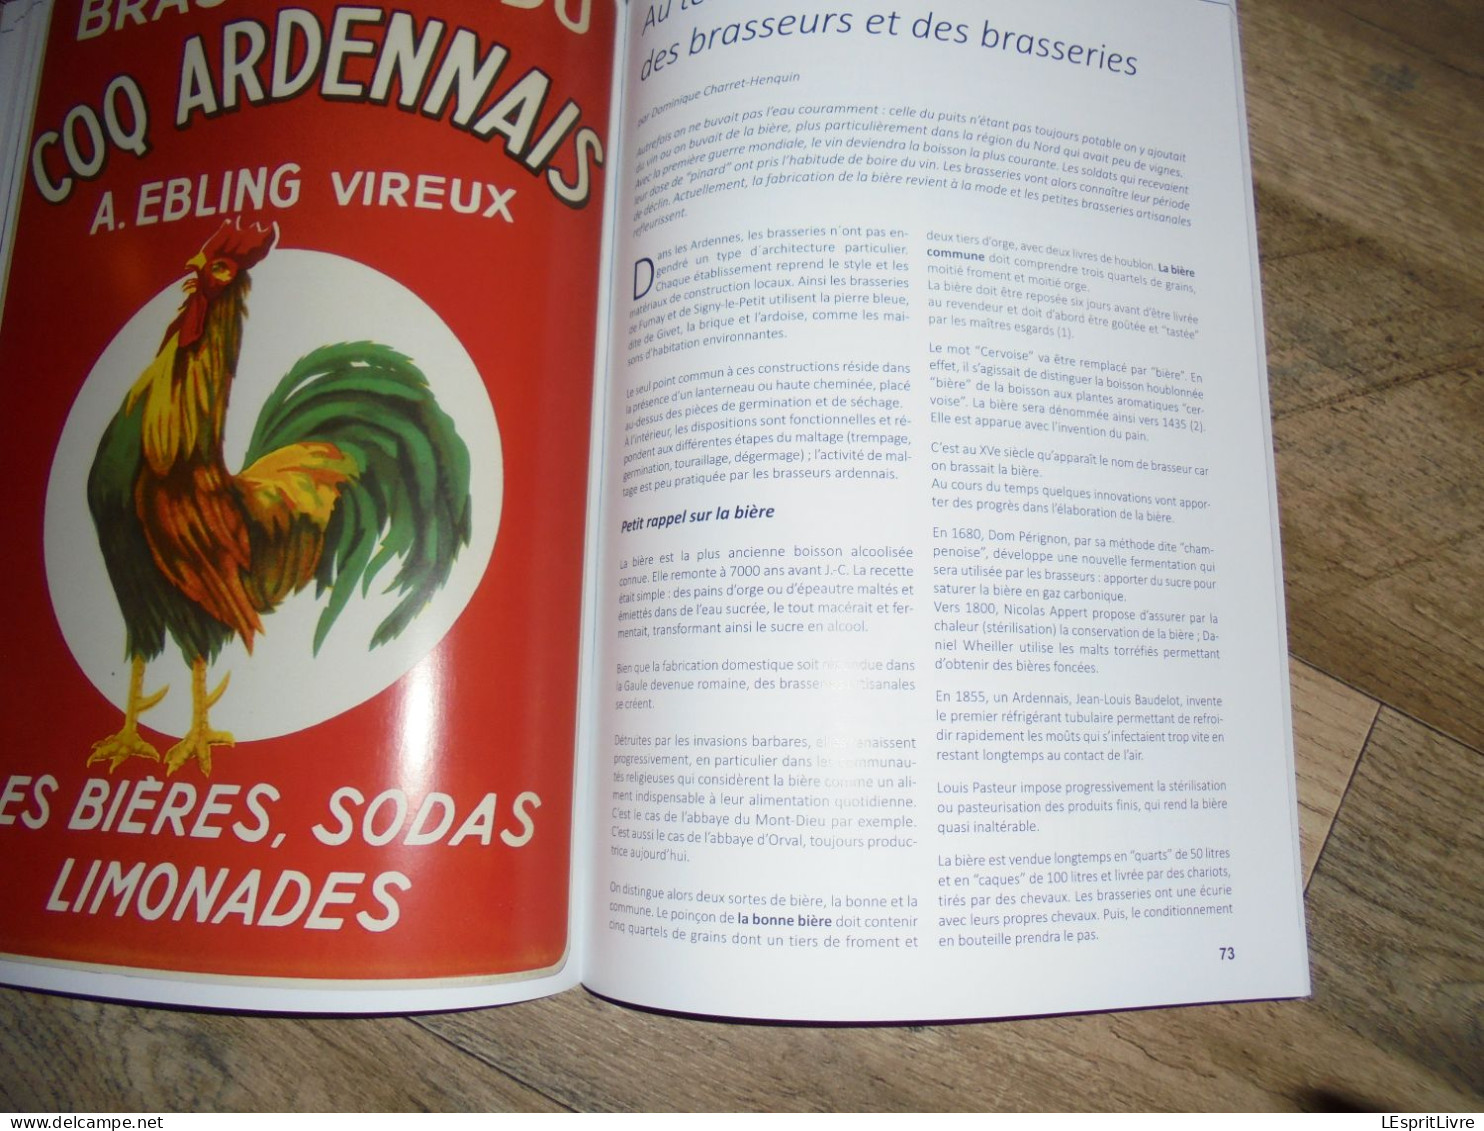 ARDENNE WALLONNE H S VIREUX Régionalisme Ardennes Brasserie Ebling Coq Ardennais Bière Industrie du Fer Usine Forges